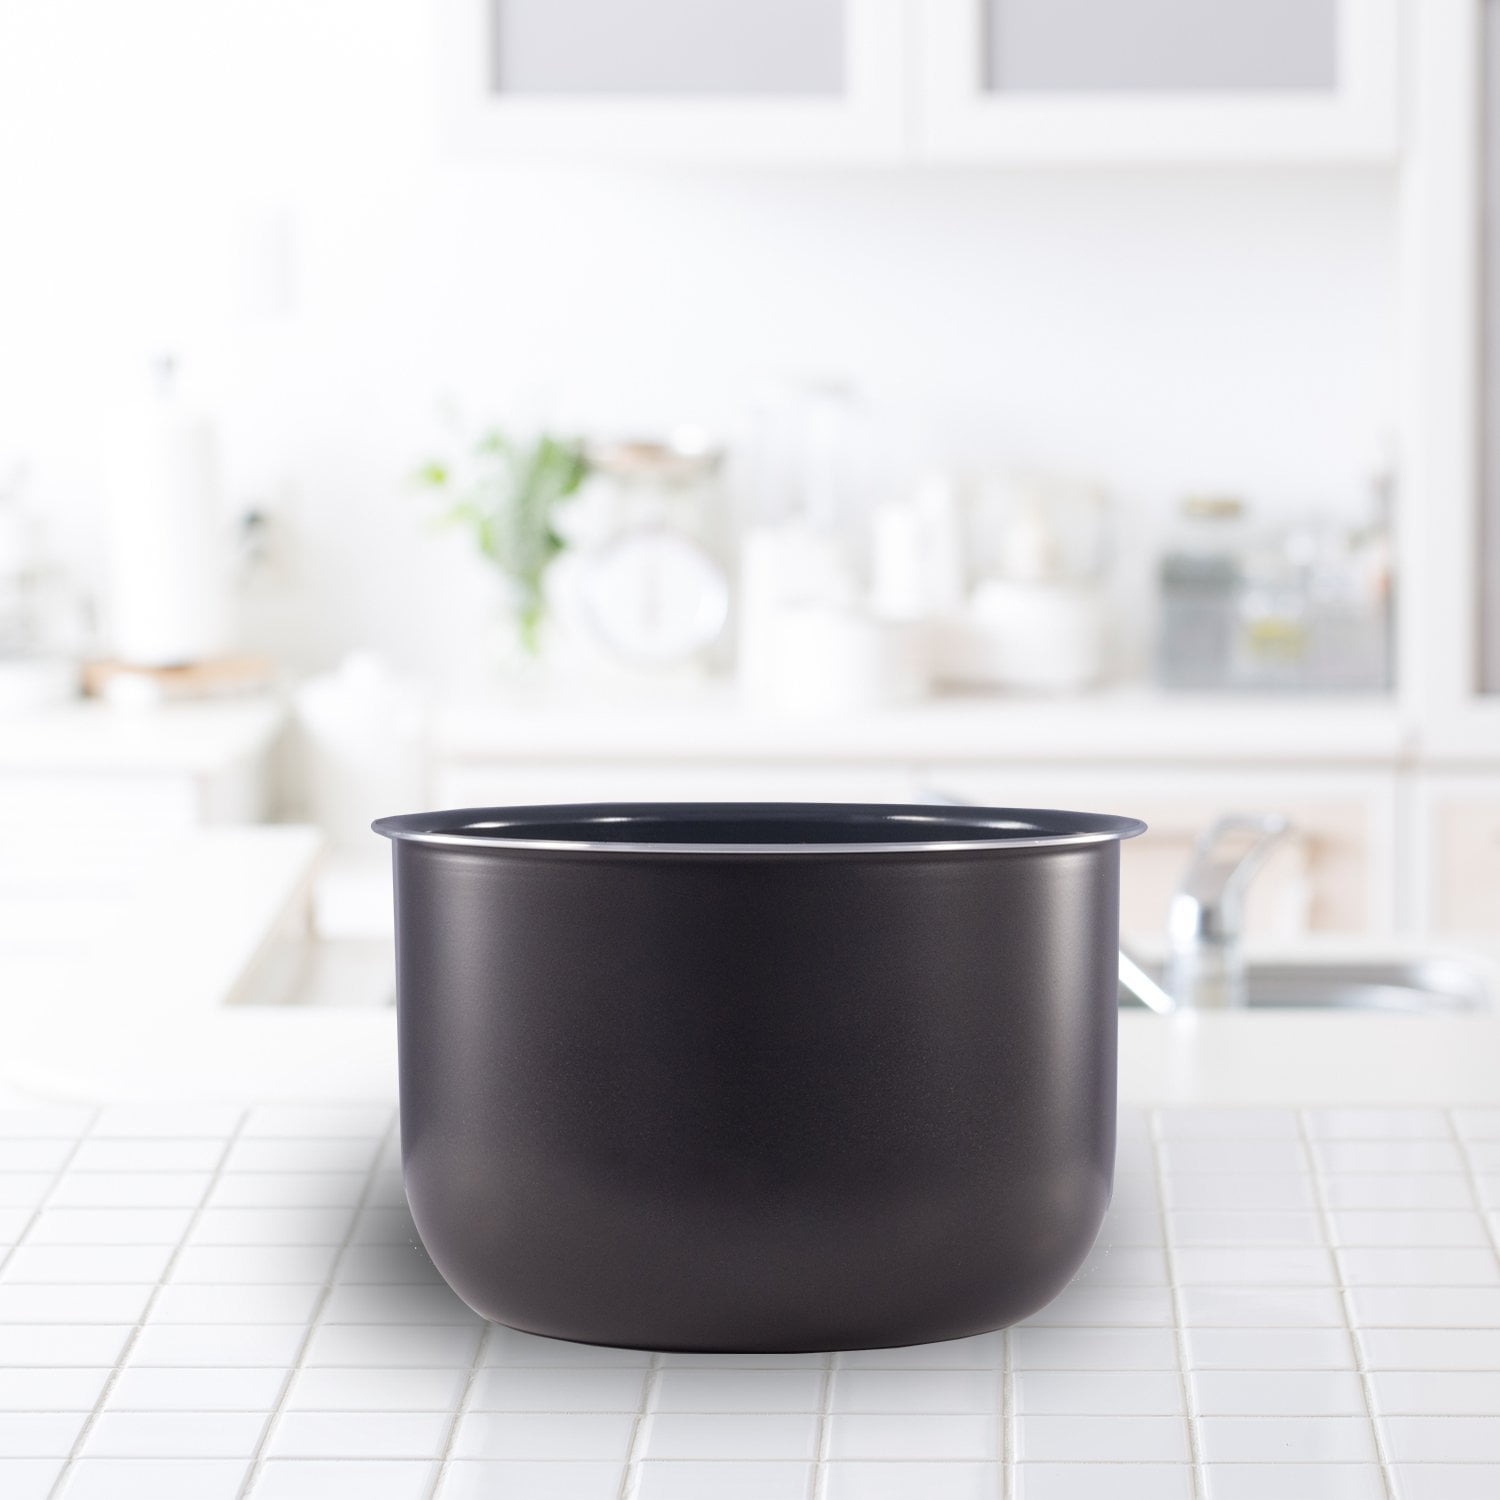 Instant Pot Ceramic Non-Stick Interior Coated Inner Cooking Pot - 6 Quart  853084004040